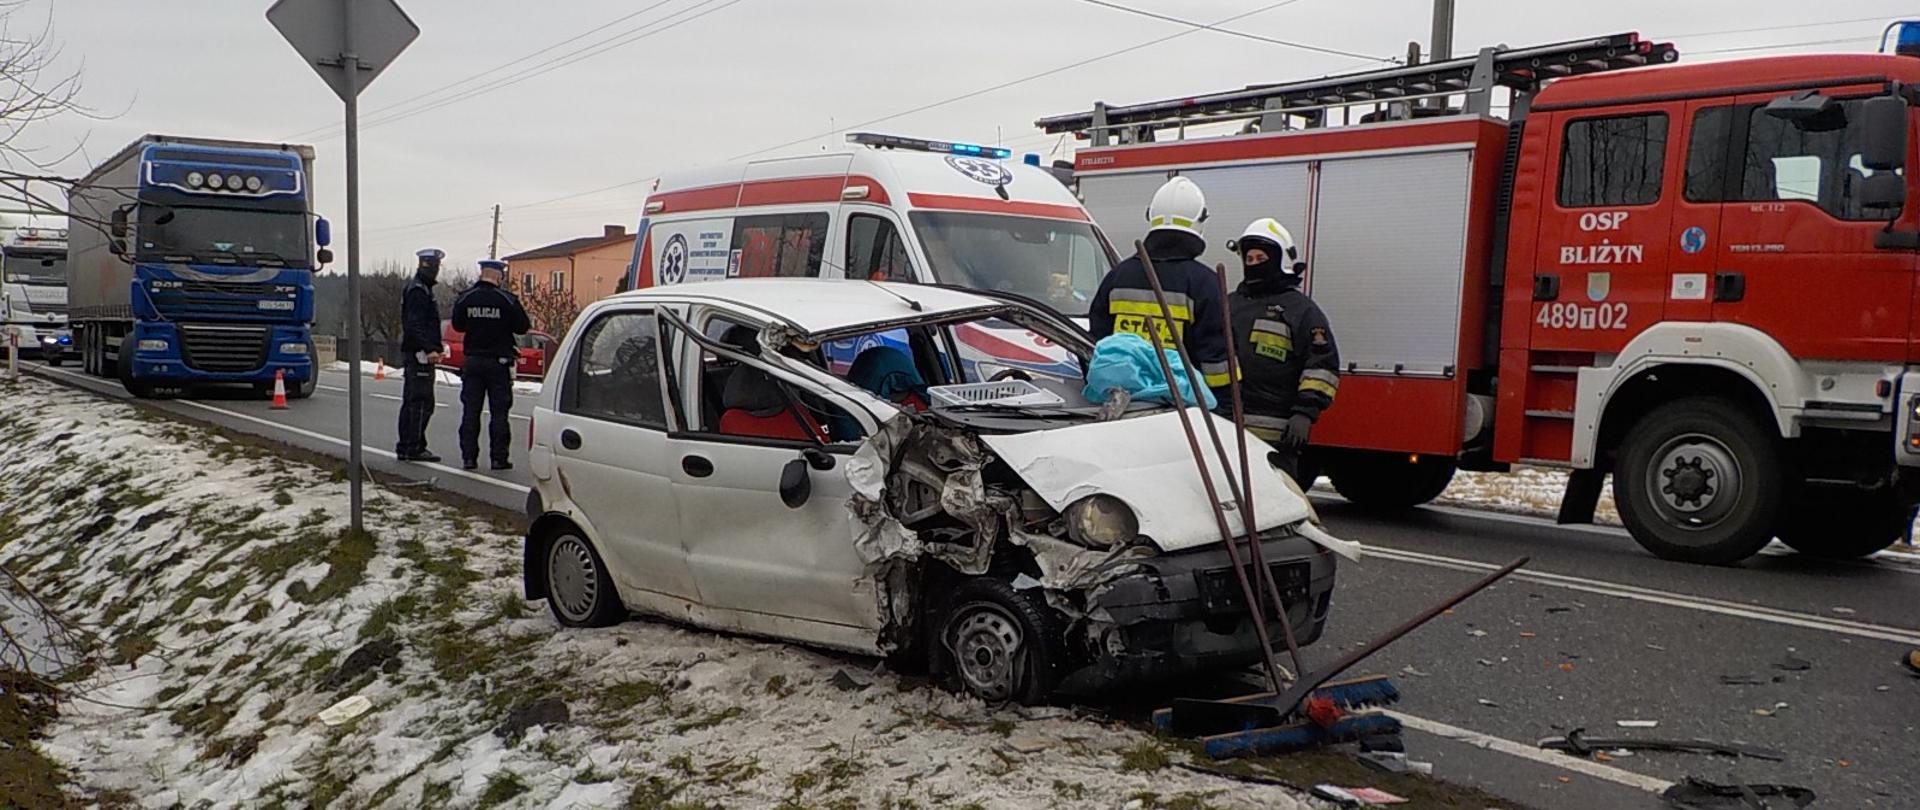 Na zdjęciu widać uszkodzony pojazd marki Daewoo Matiz znajdujący się na poboczu drogi, samochód gaśniczy jednostki OSP oraz karetkę pogotowia. Dwóch ratowników straży pożarnej usuwa skutki zdarzenia. Dwóch funkcjonariuszy Policji prowadzi czynności wyjaśniające zdarzenie.